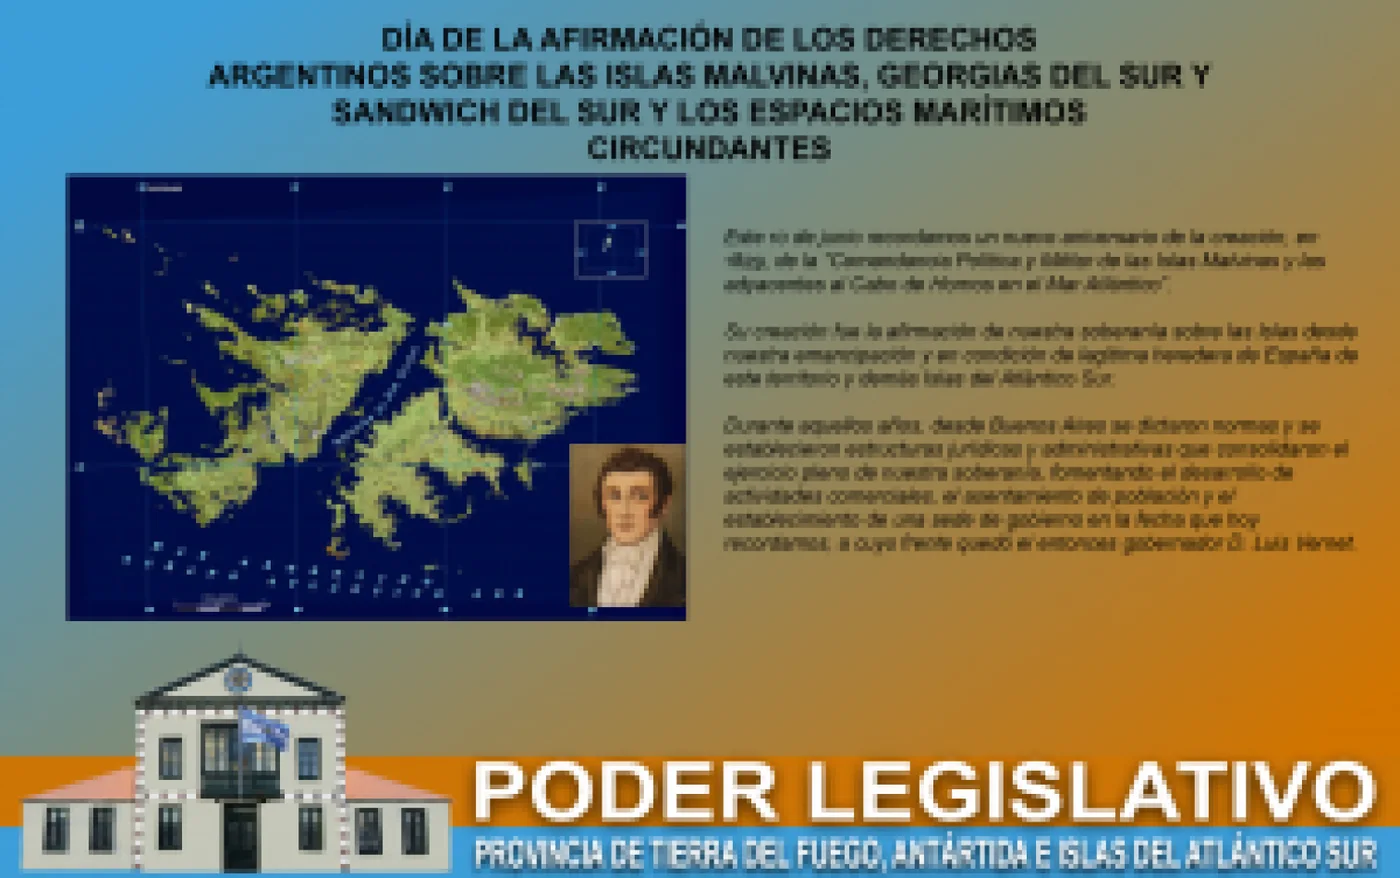 Legisladores reafirmaron su compromiso en la reafirmación de los derechos argentinos sobre Malvinas